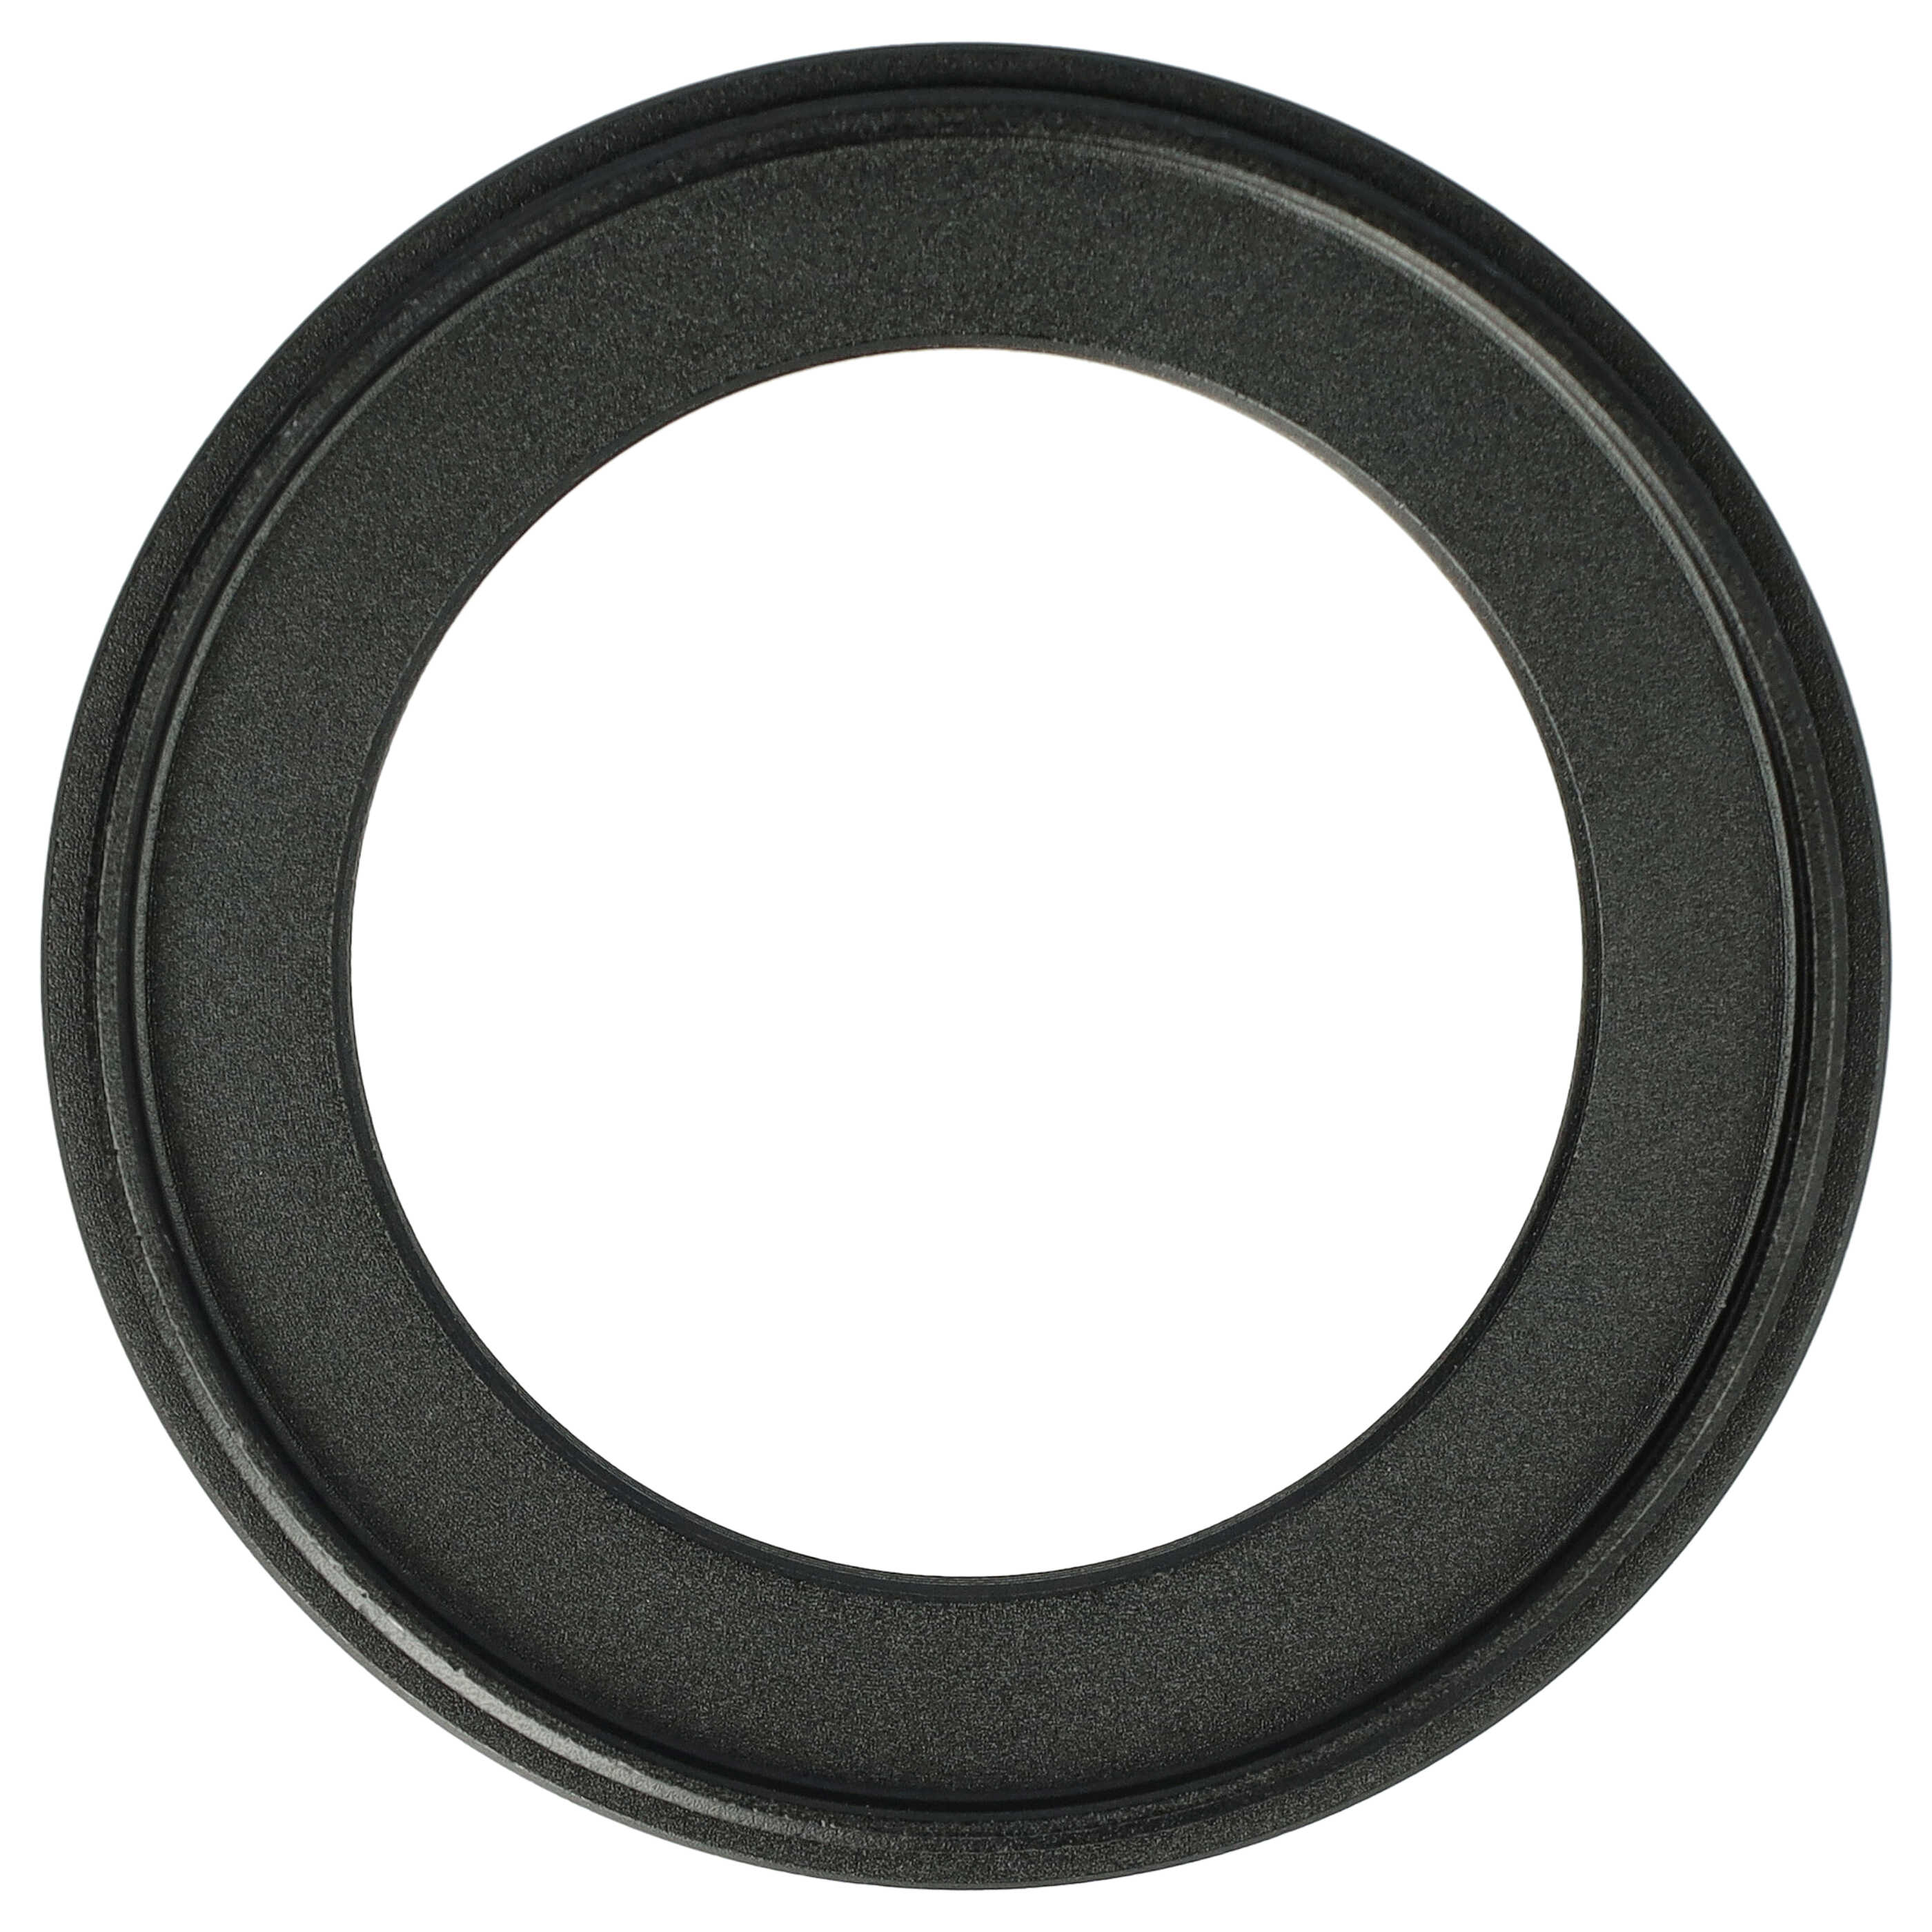 Redukcja filtrowa adapter Step-Down 52 mm - 37 mm pasująca do obiektywu - metal, czarny